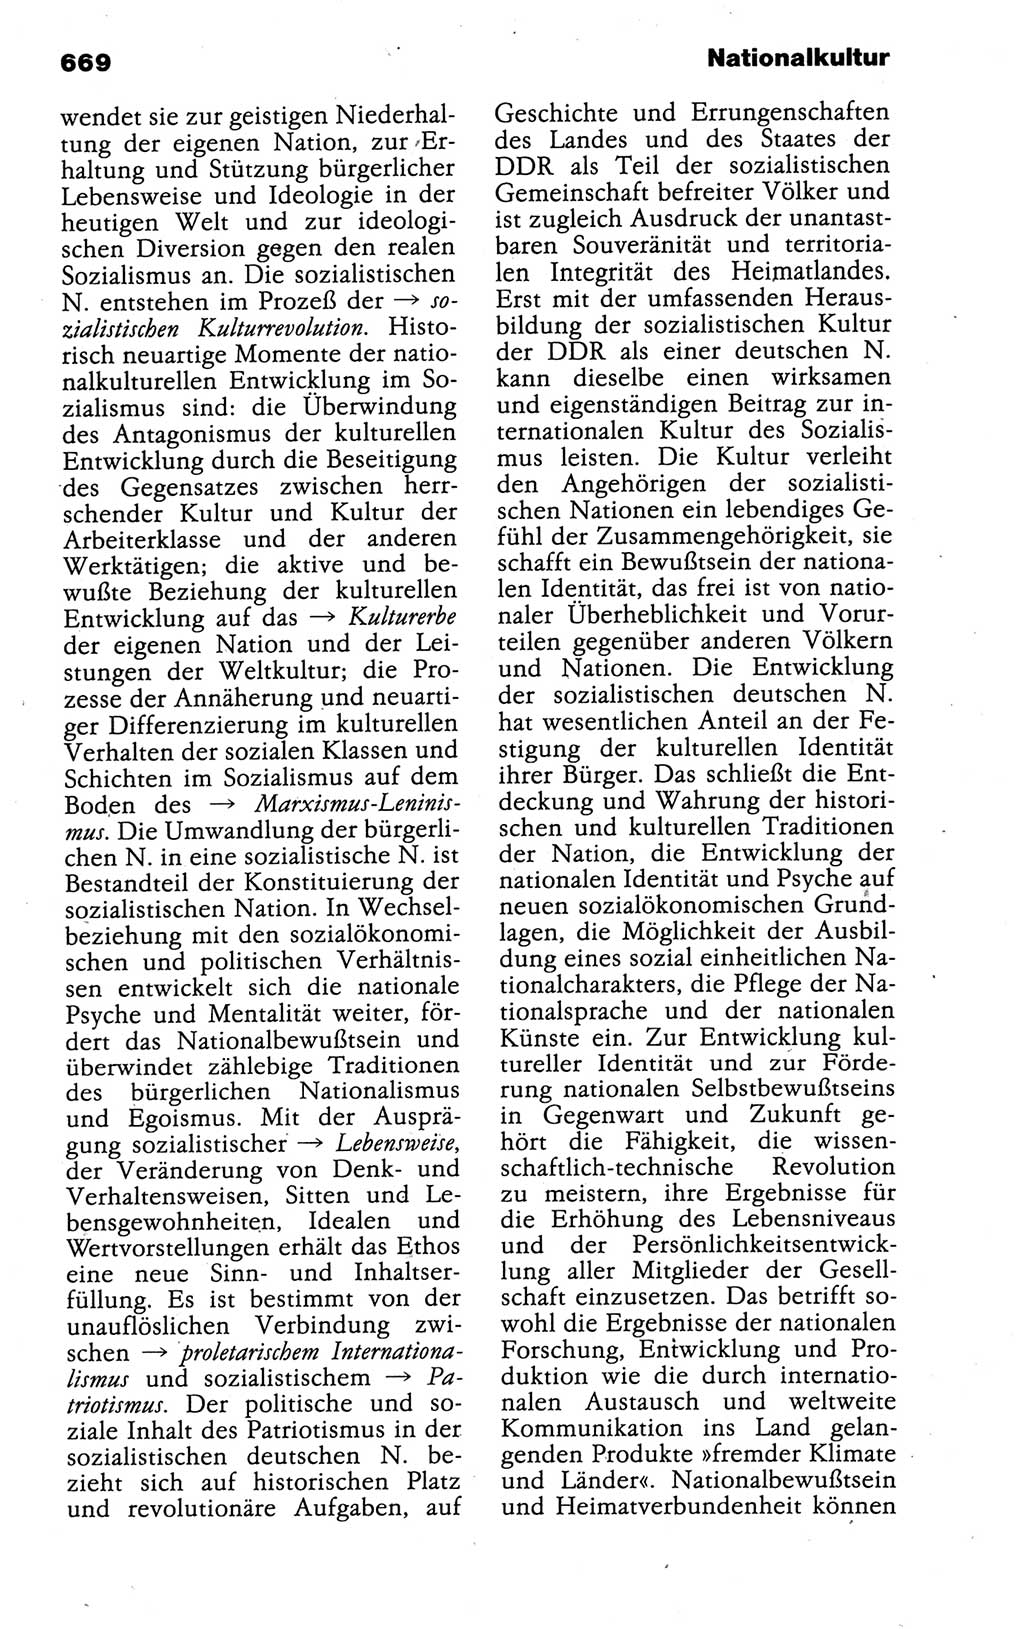 Kleines politisches Wörterbuch [Deutsche Demokratische Republik (DDR)] 1988, Seite 669 (Kl. pol. Wb. DDR 1988, S. 669)